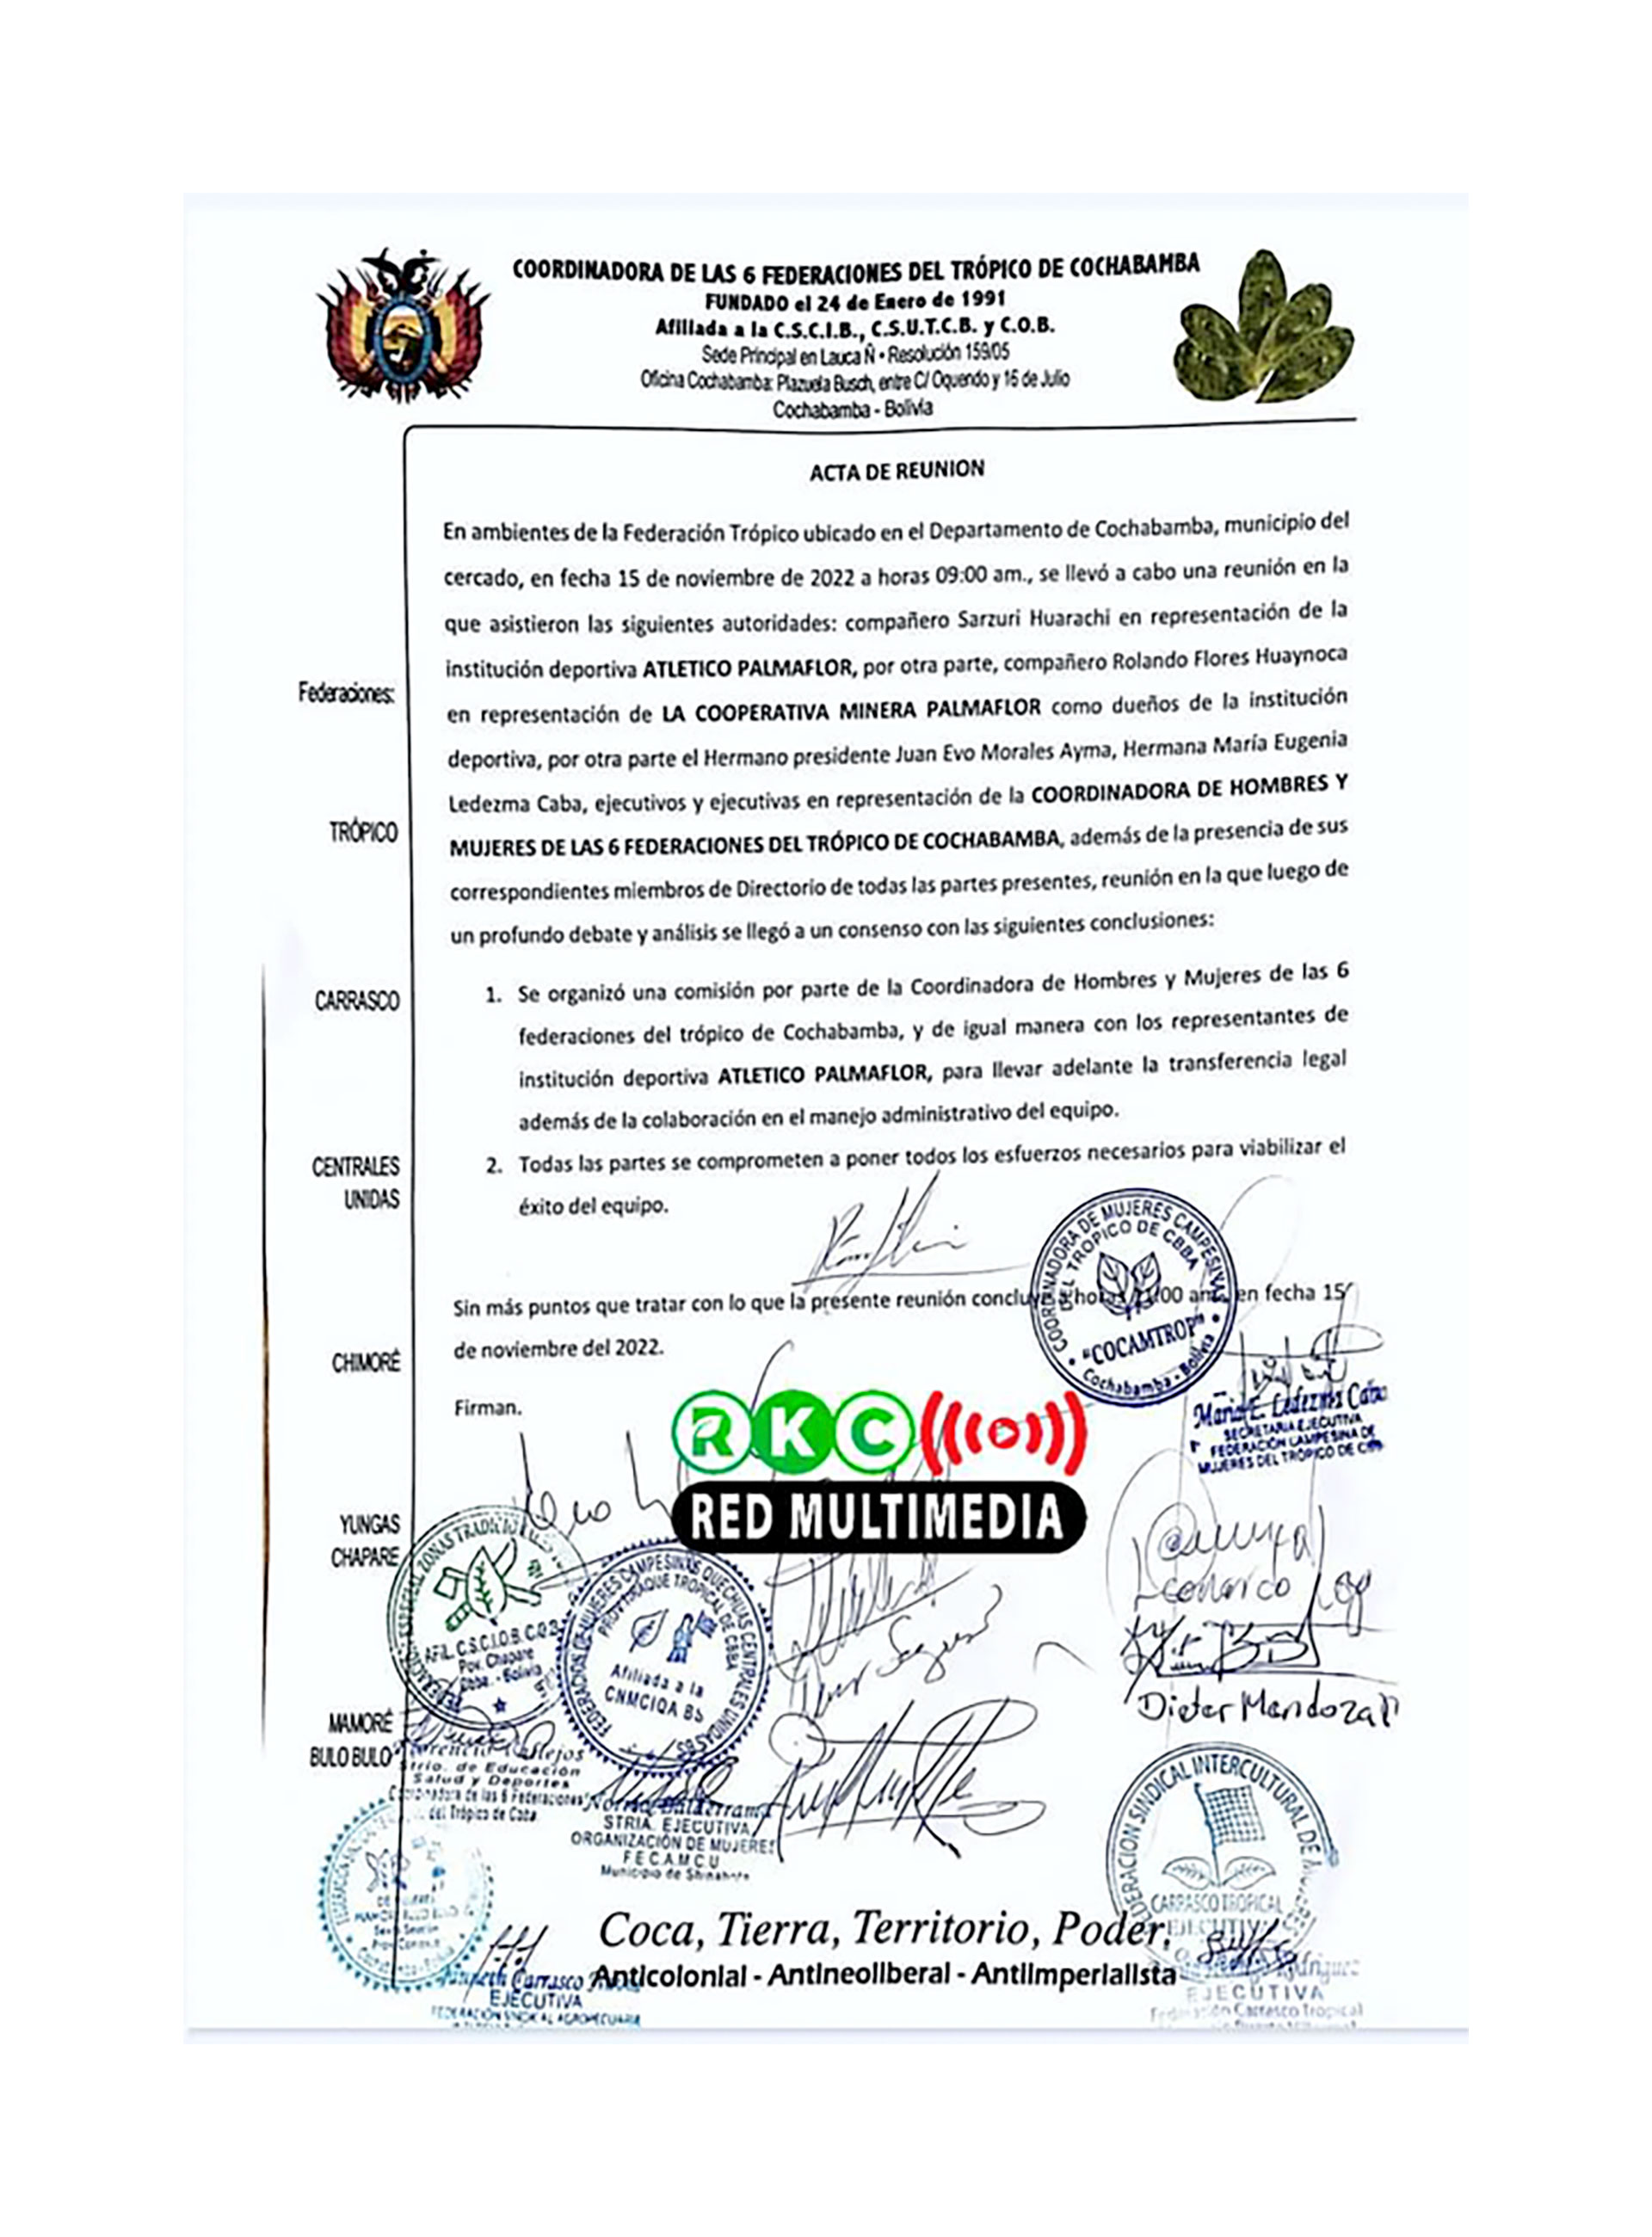 El documento que compartió el ex presidente boliviano en sus redes sociales